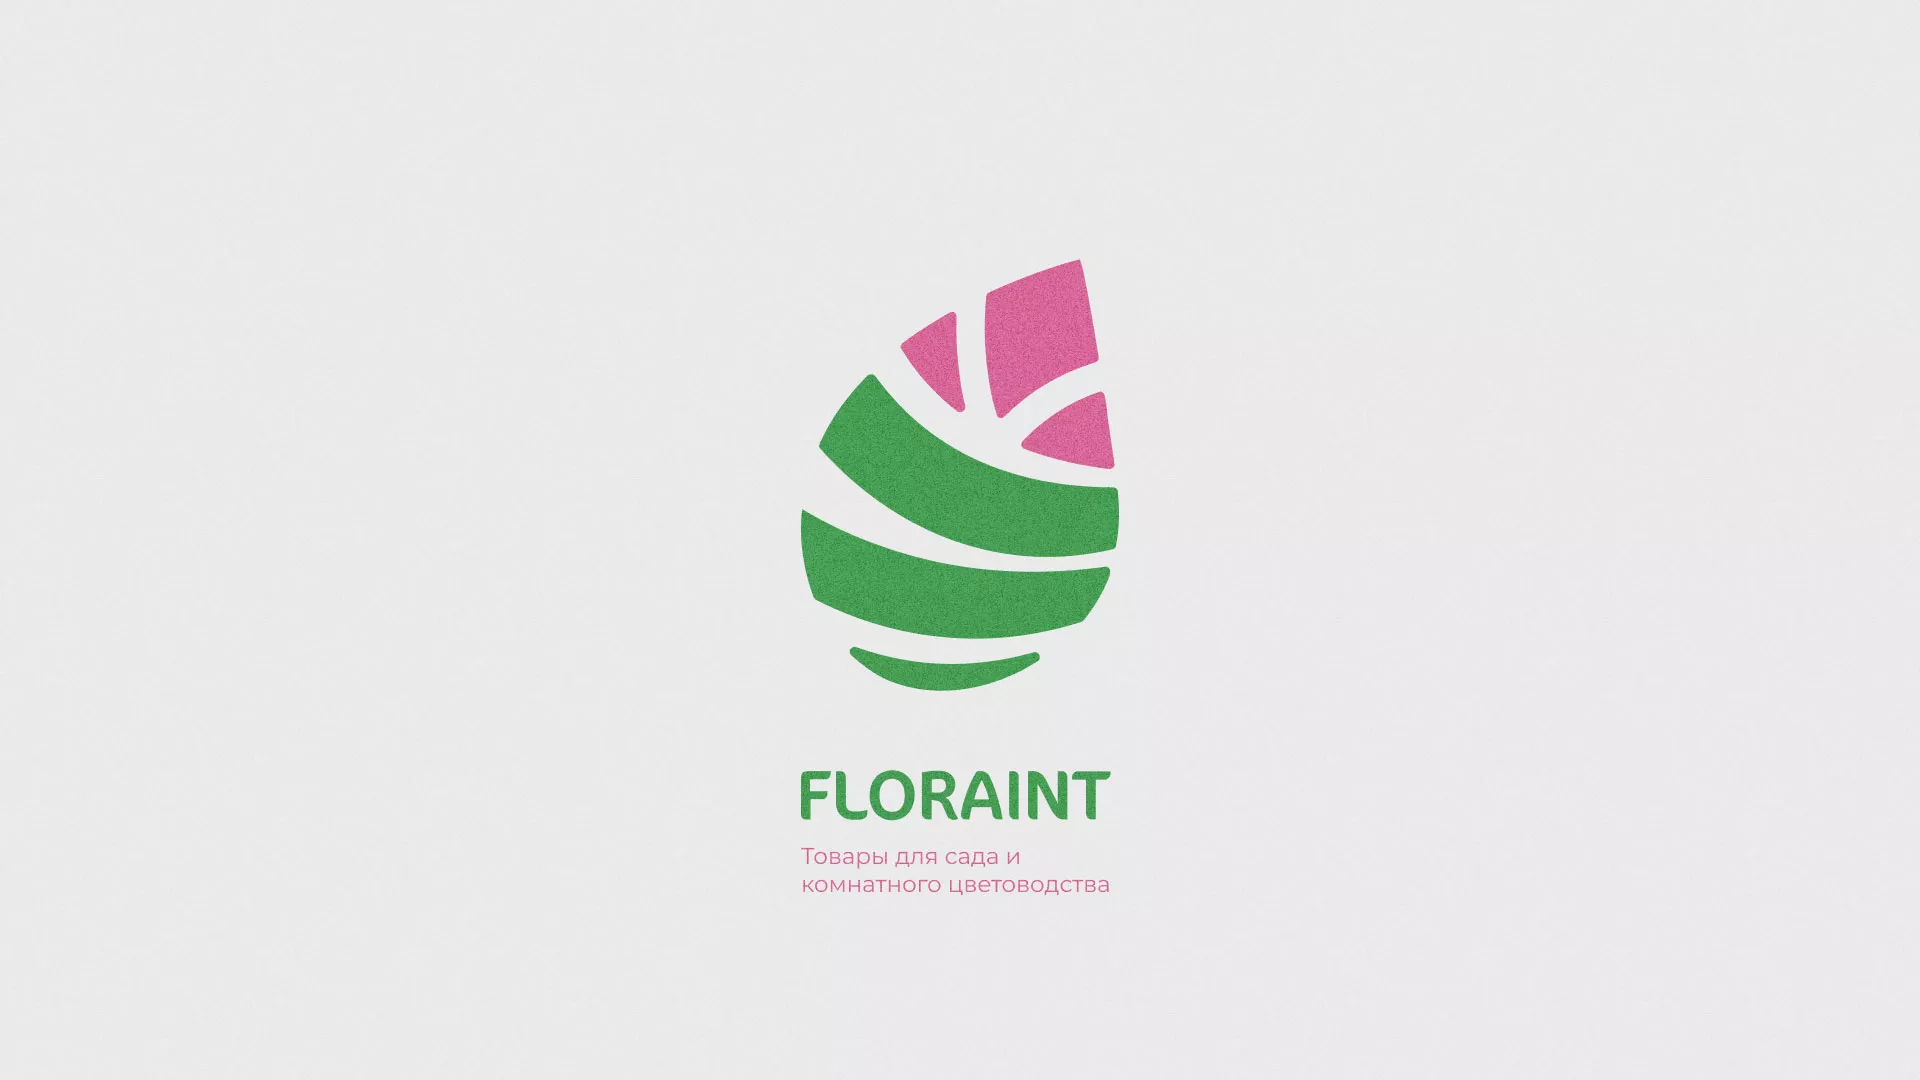 Разработка оформления профиля Instagram для магазина «Floraint» в Дудинке